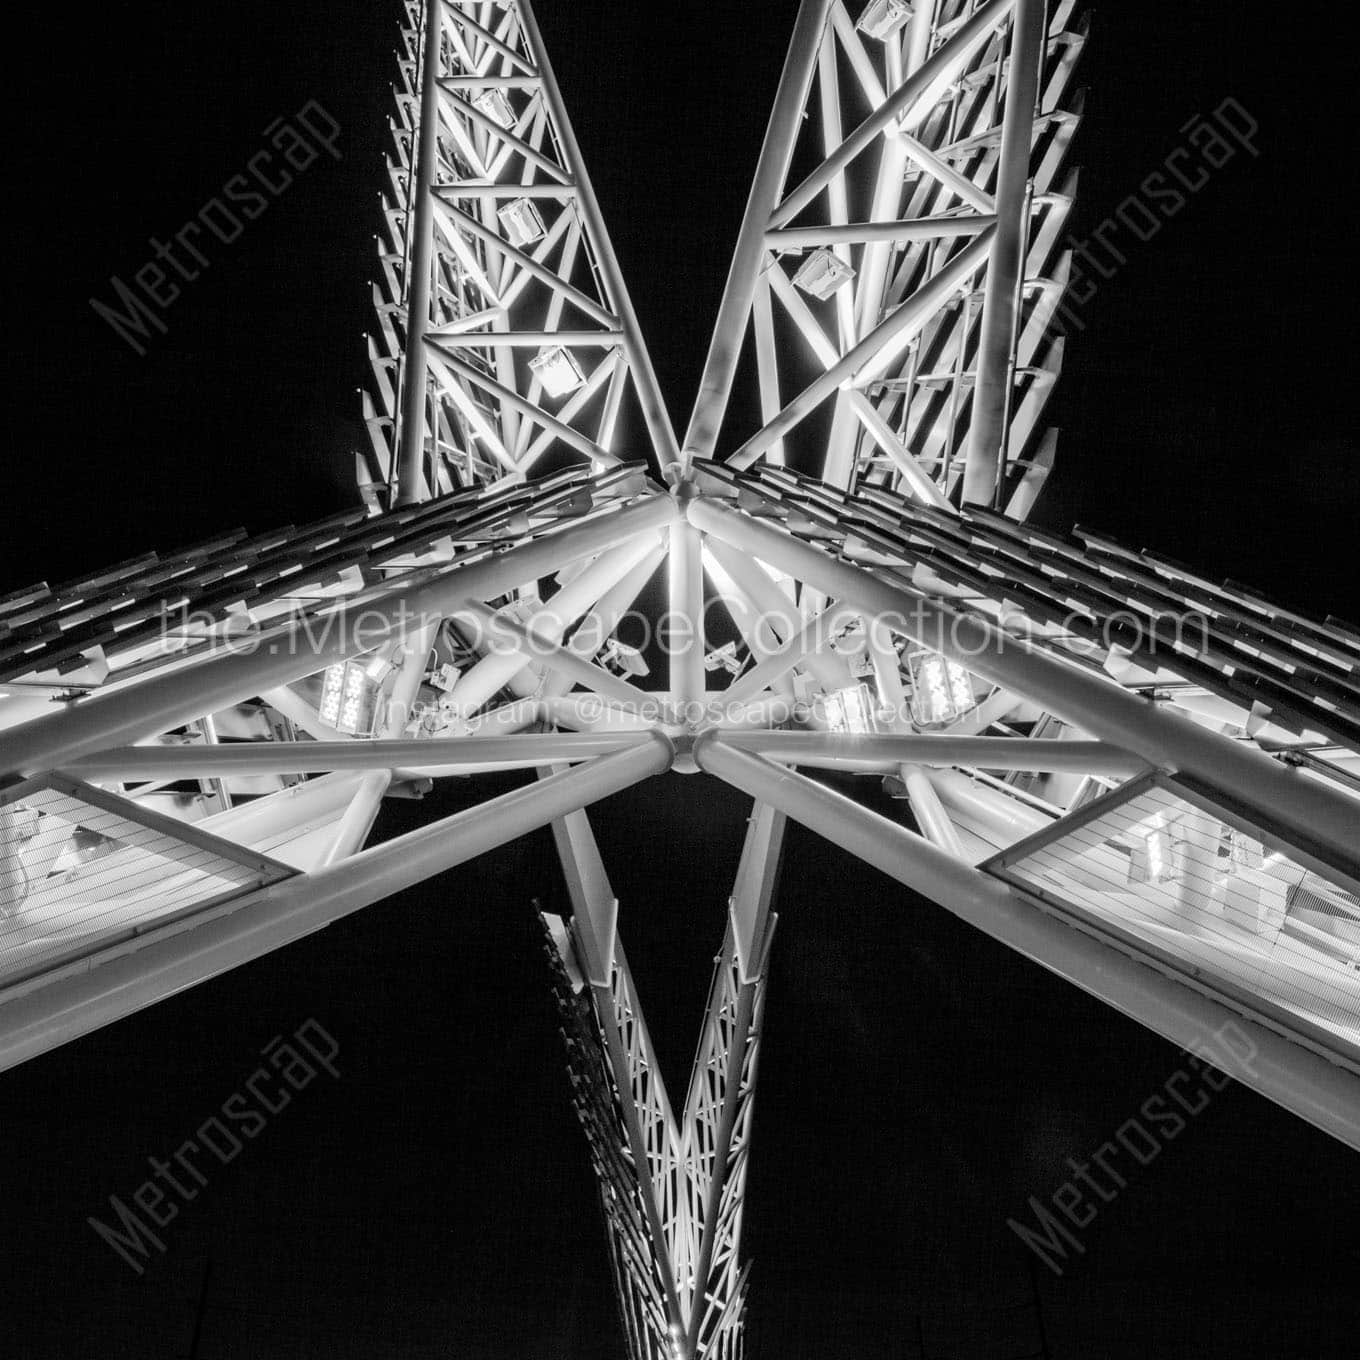 skydance pedestrian bridge at night Black & White Office Art